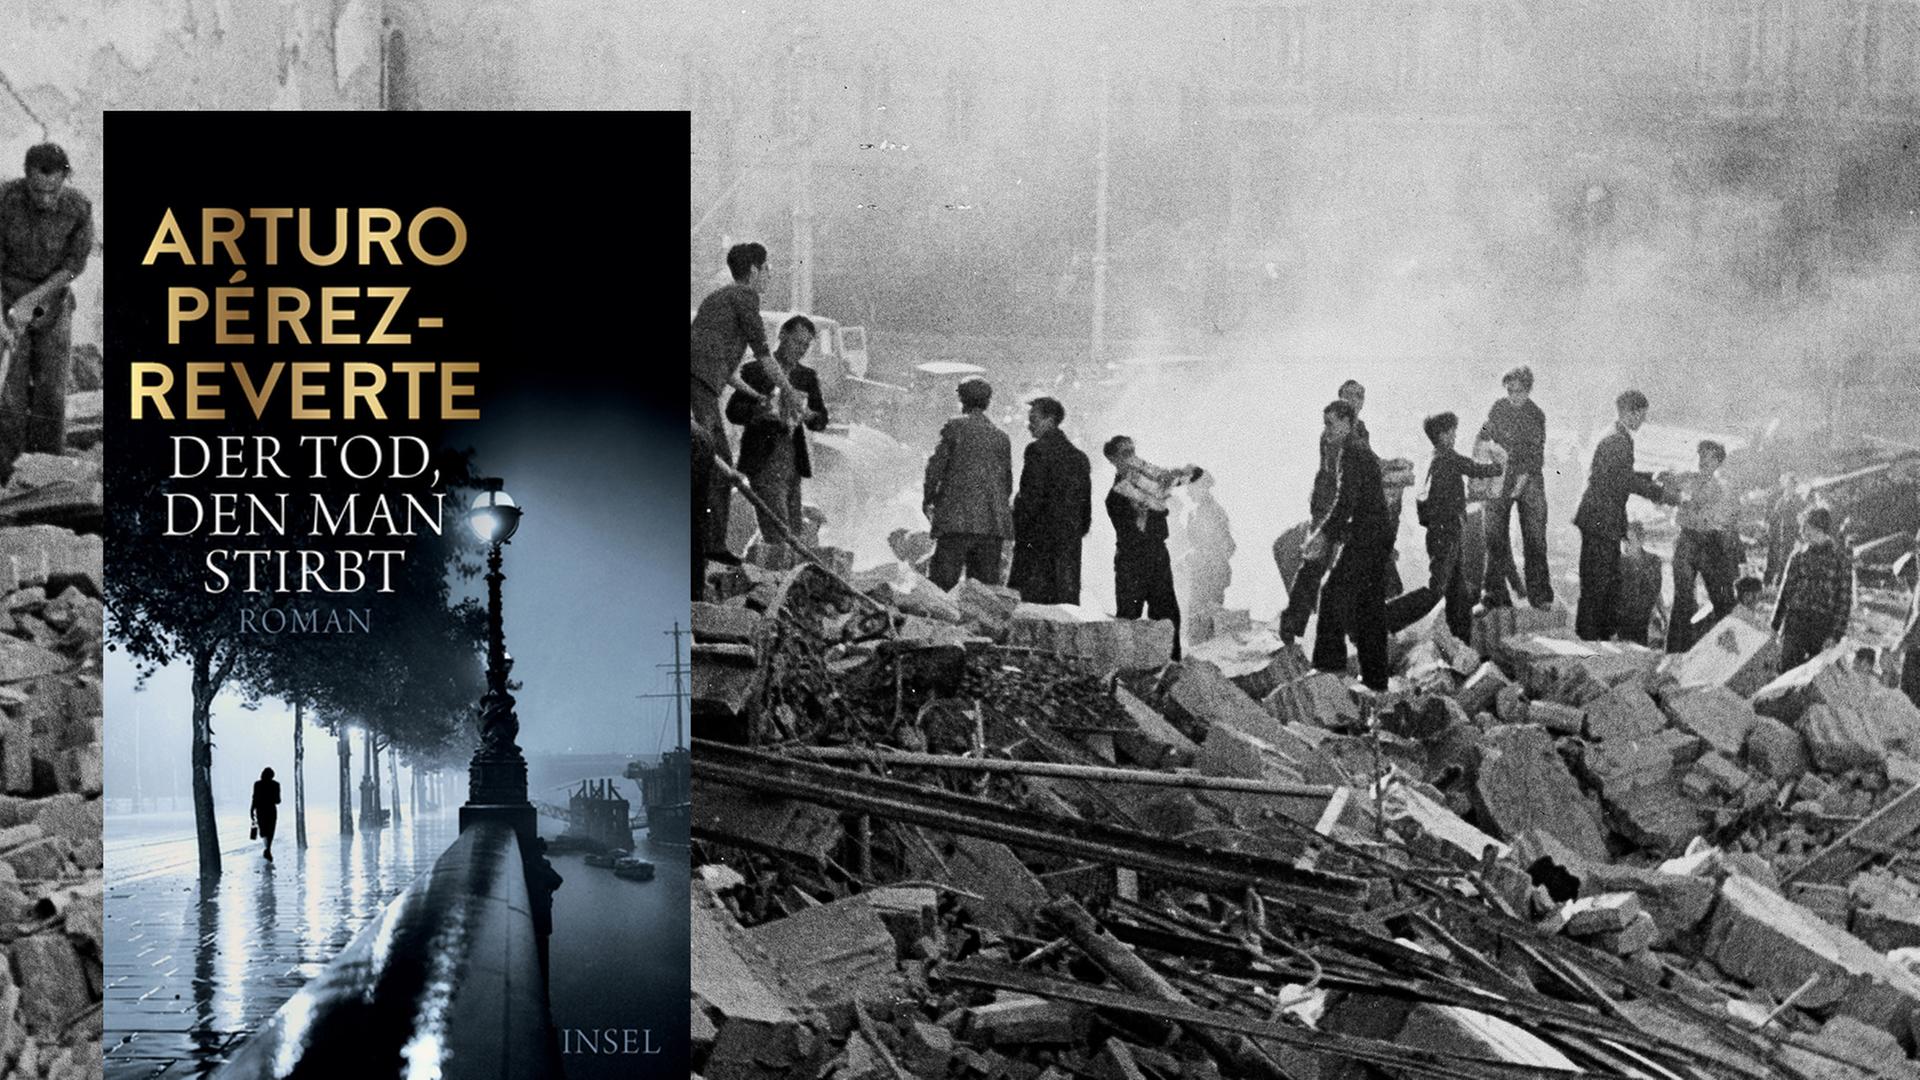 Cover von Arturo Pérez-Revertes Thriller "Der Tod, den man stirbt". Im Hintergrund sieht man Jugendliche, die am 17. März 1938, nachdem Franco Barcelona hat bombardieren lassen, in den Trümmern nach Überlebenden und Toten suchen.